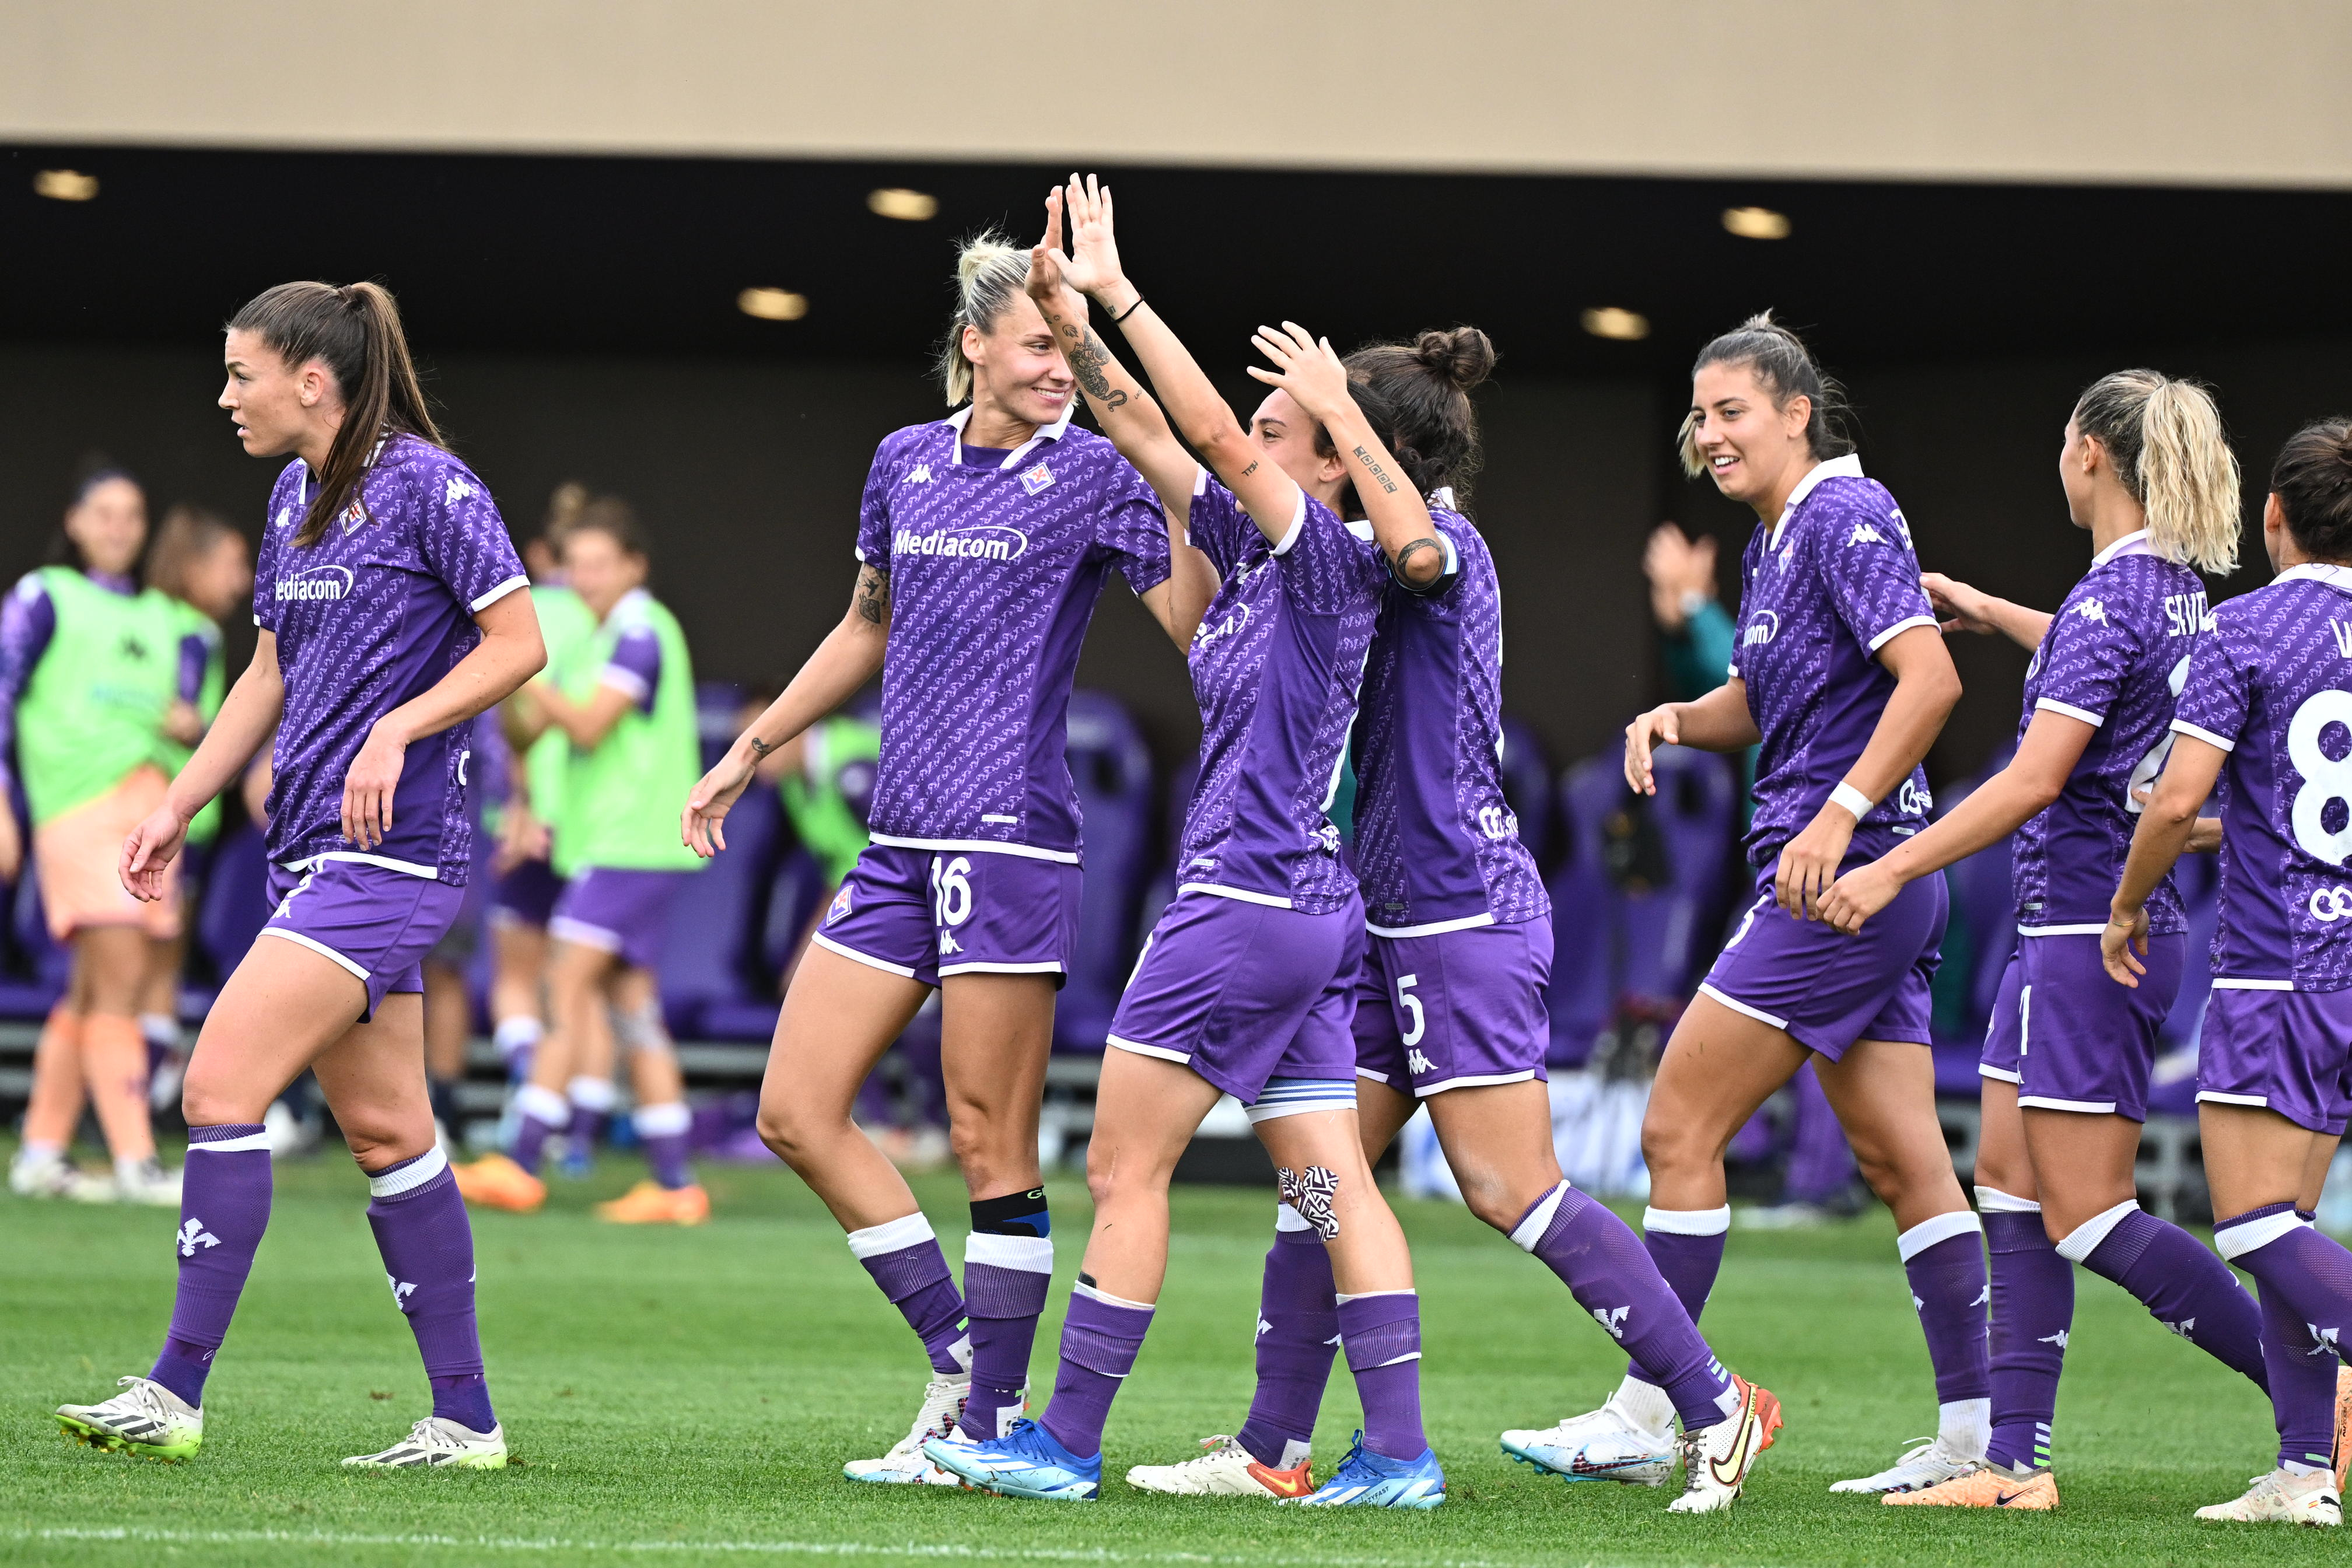 Fiorentina Women's diventa Acf Fiorentina Femminile. Il comunicato